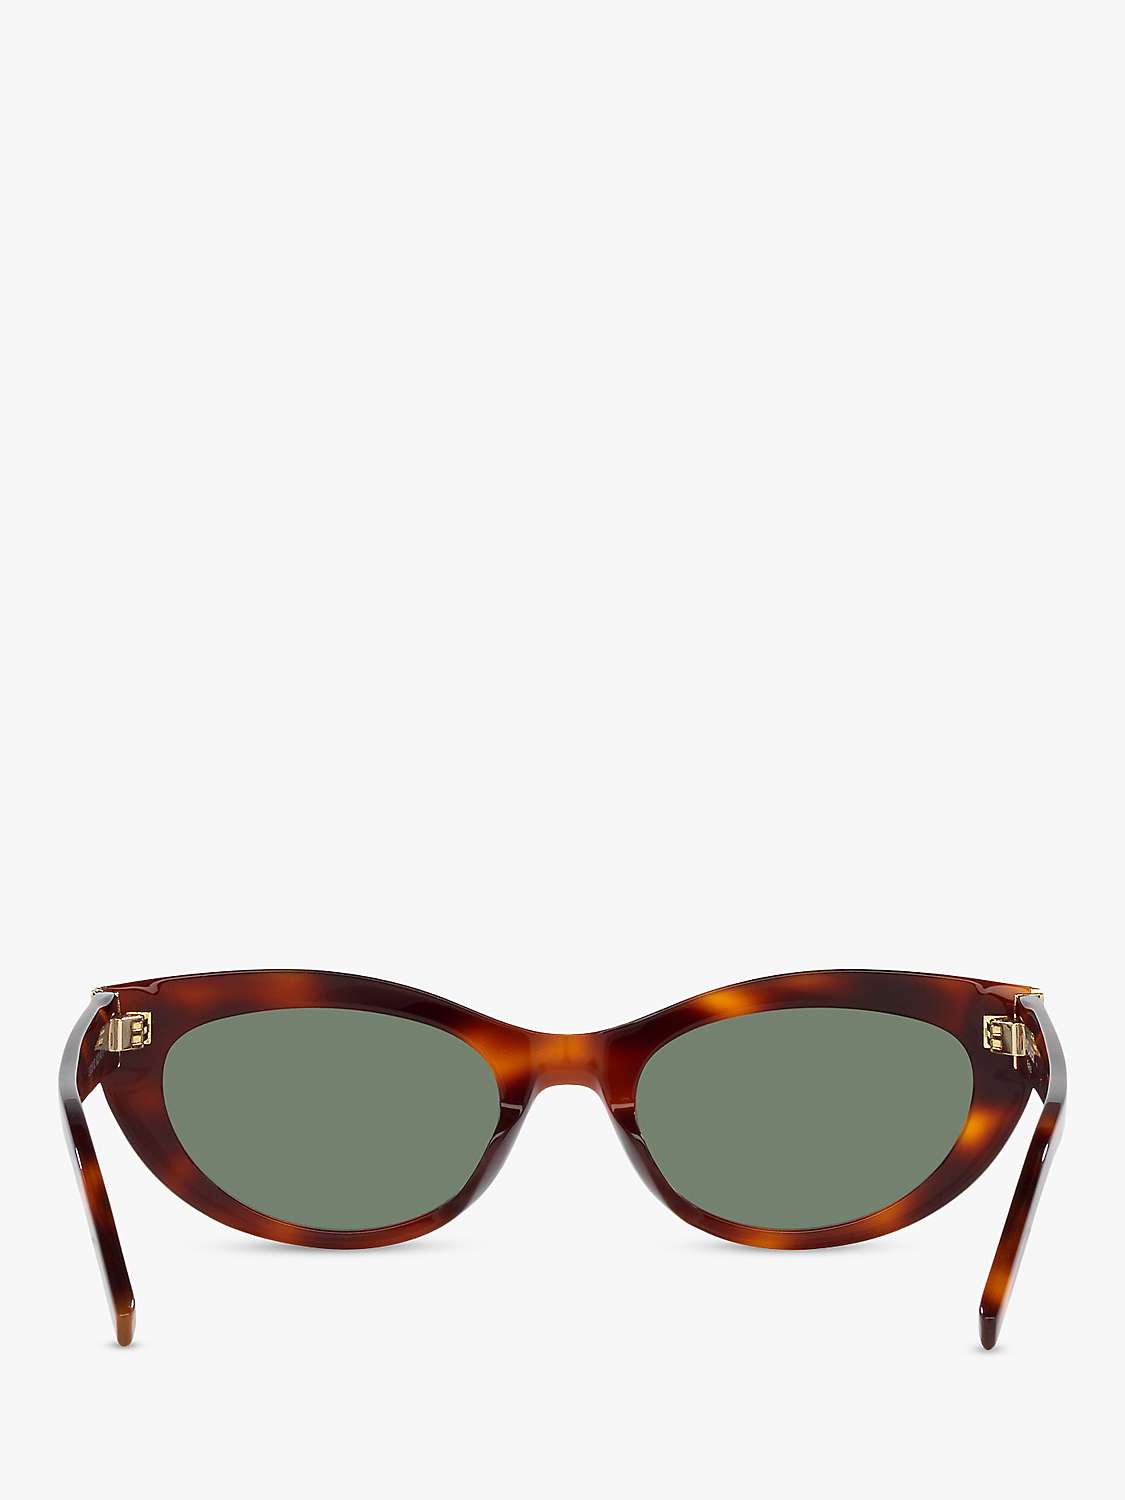 Buy Yves Saint Laurent YS000461 Unisex Oval Sunglasses, Tortoise/Green Online at johnlewis.com